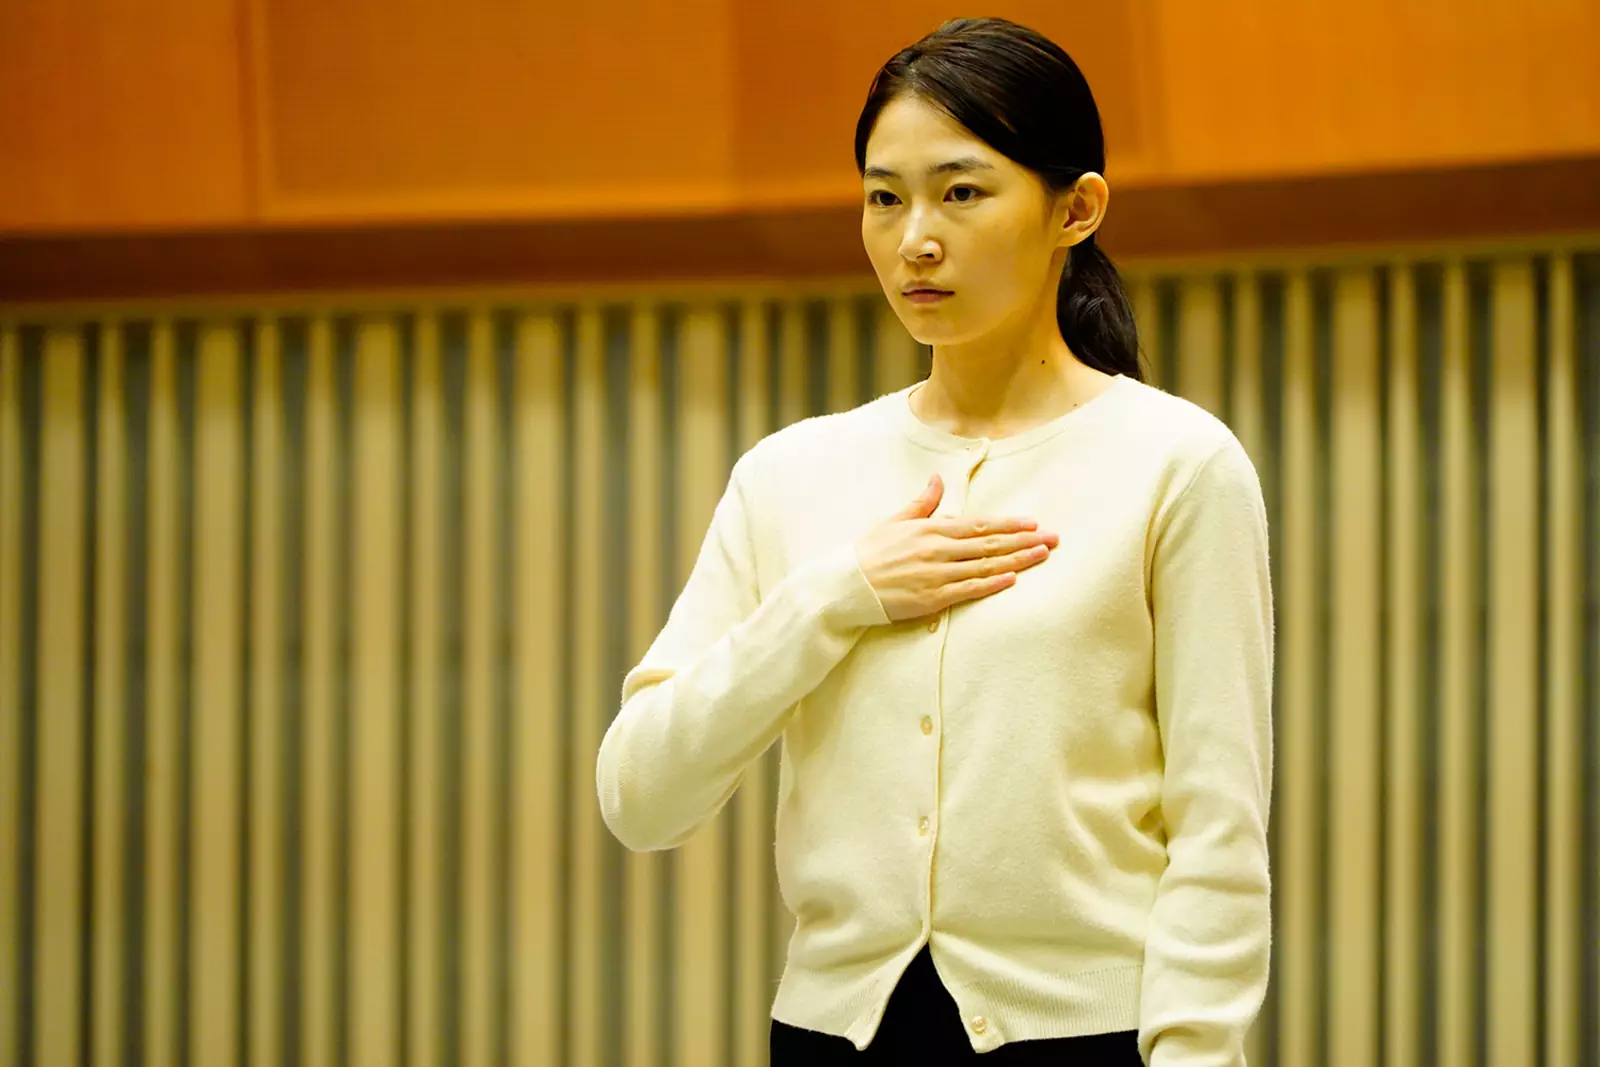 Среди актеров пьесы "Дядя Ваня" находится место и актрисе, говорящей на корейском языке жестов. Причем сентиментальности этой ветке сюжета не занимать.